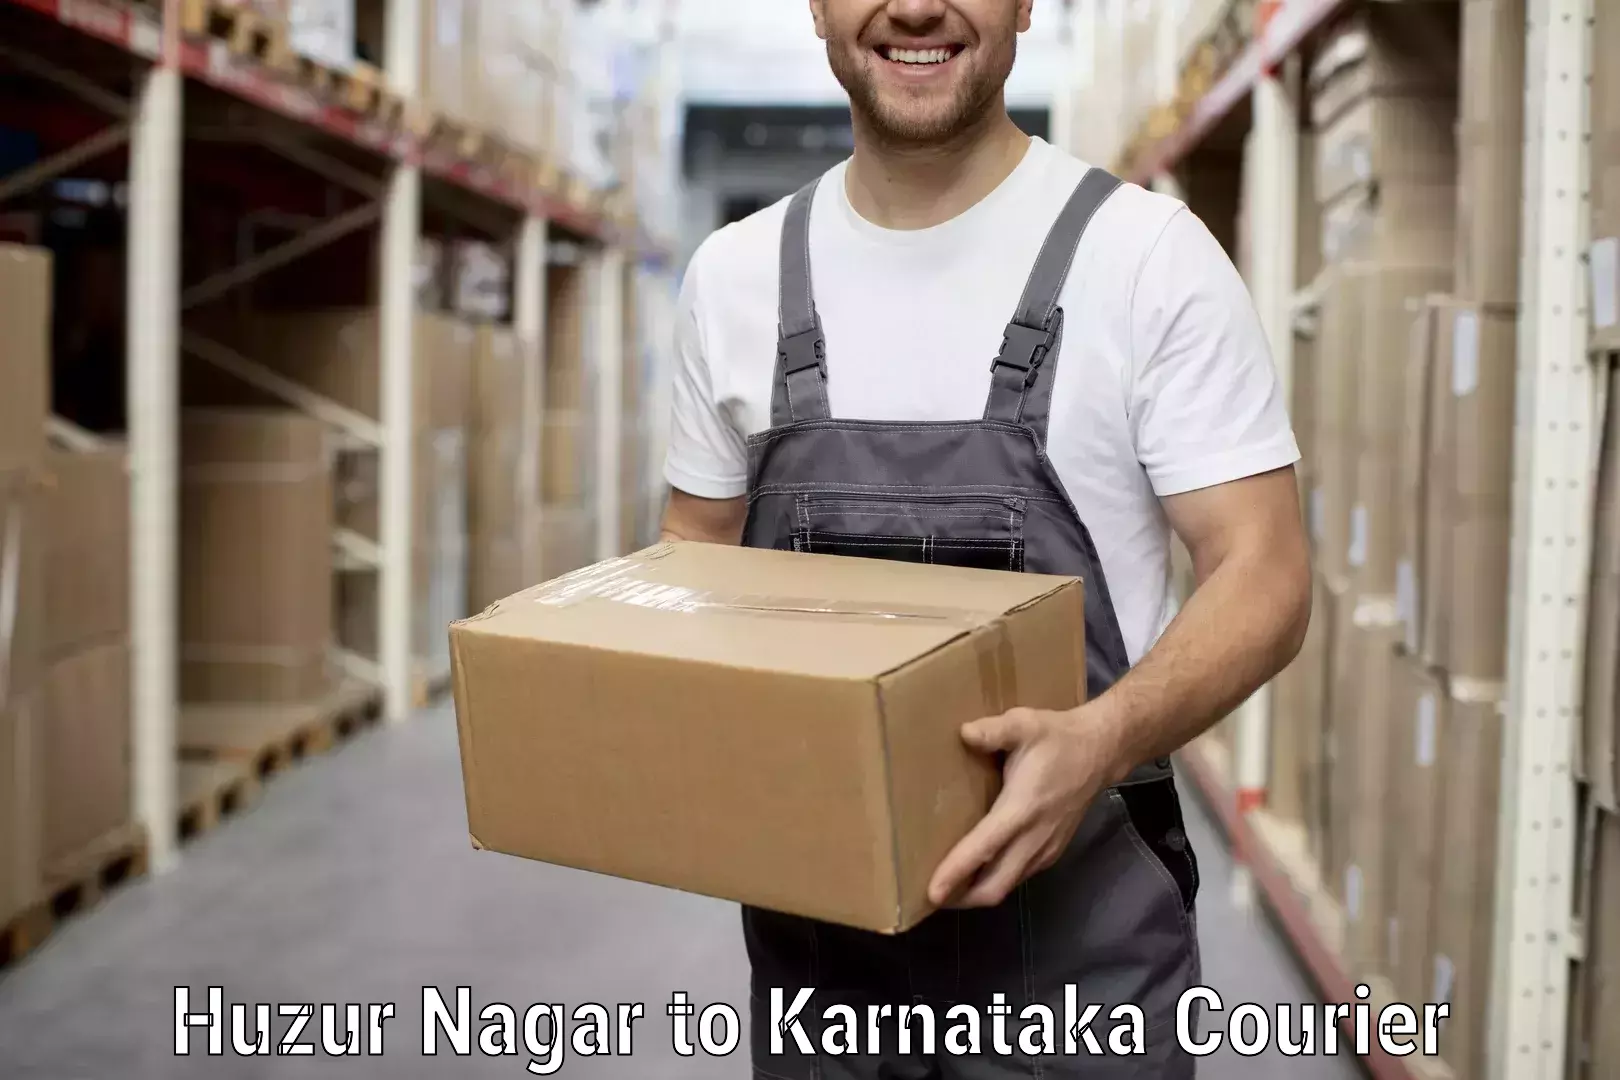 Household goods movers and packers Huzur Nagar to Karnataka